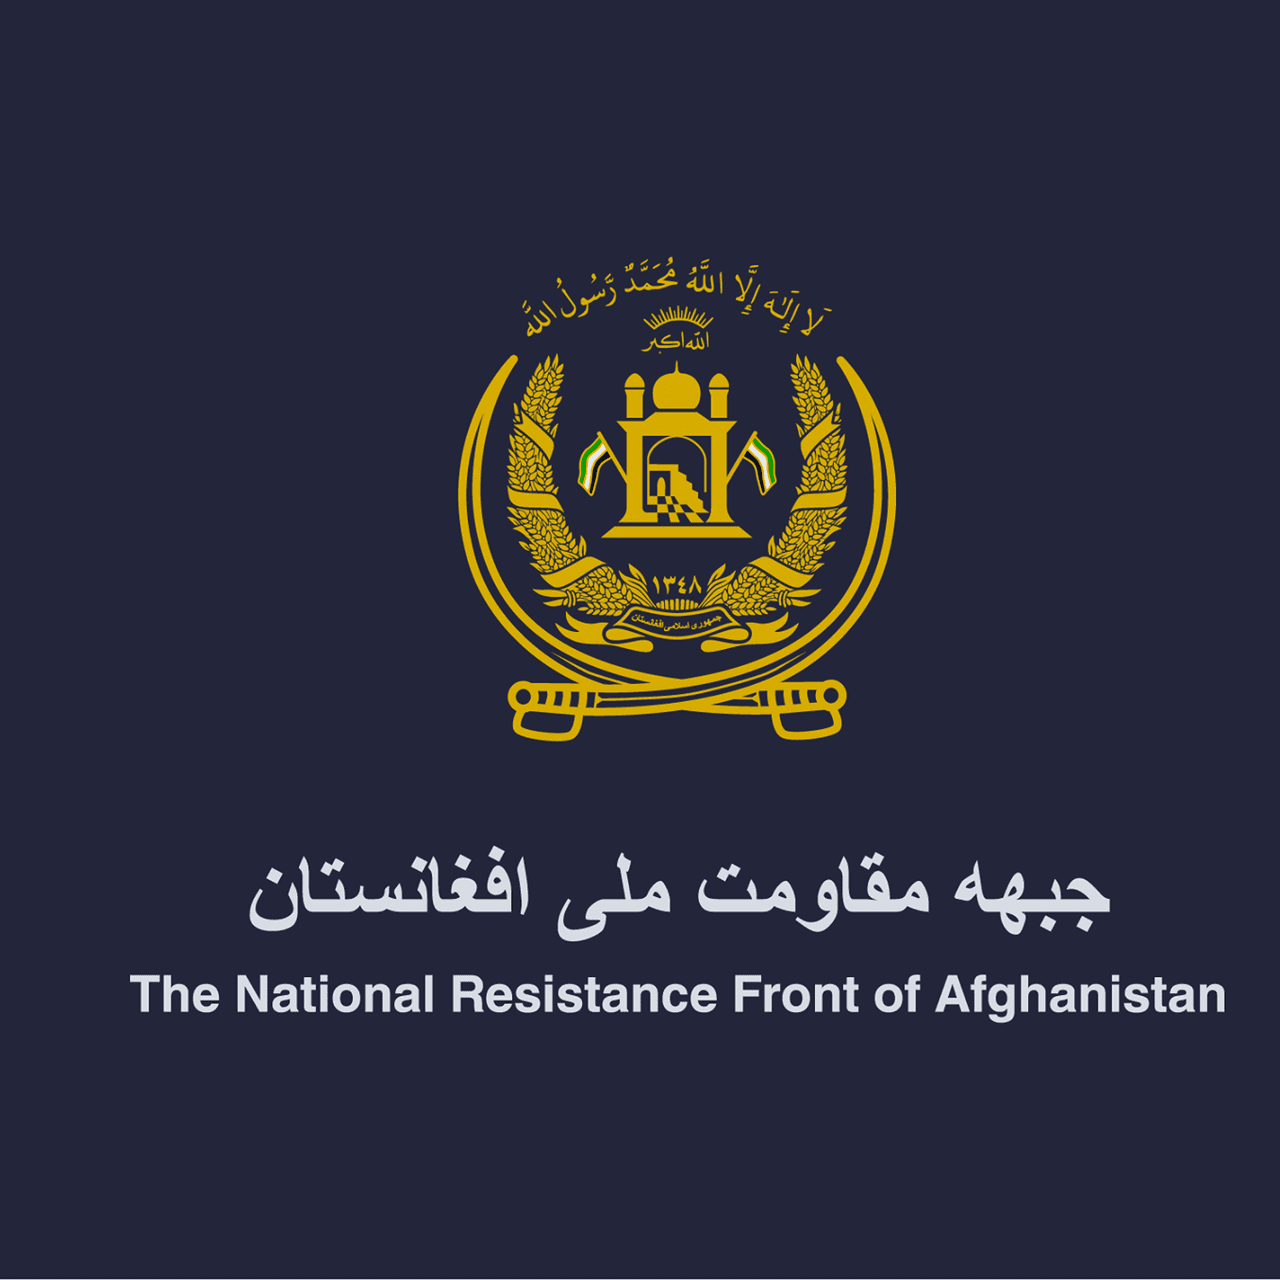 بیانیه شورای مقاومت ملی افغانستان به مناسبت سالگرد حادثه مزارشریف